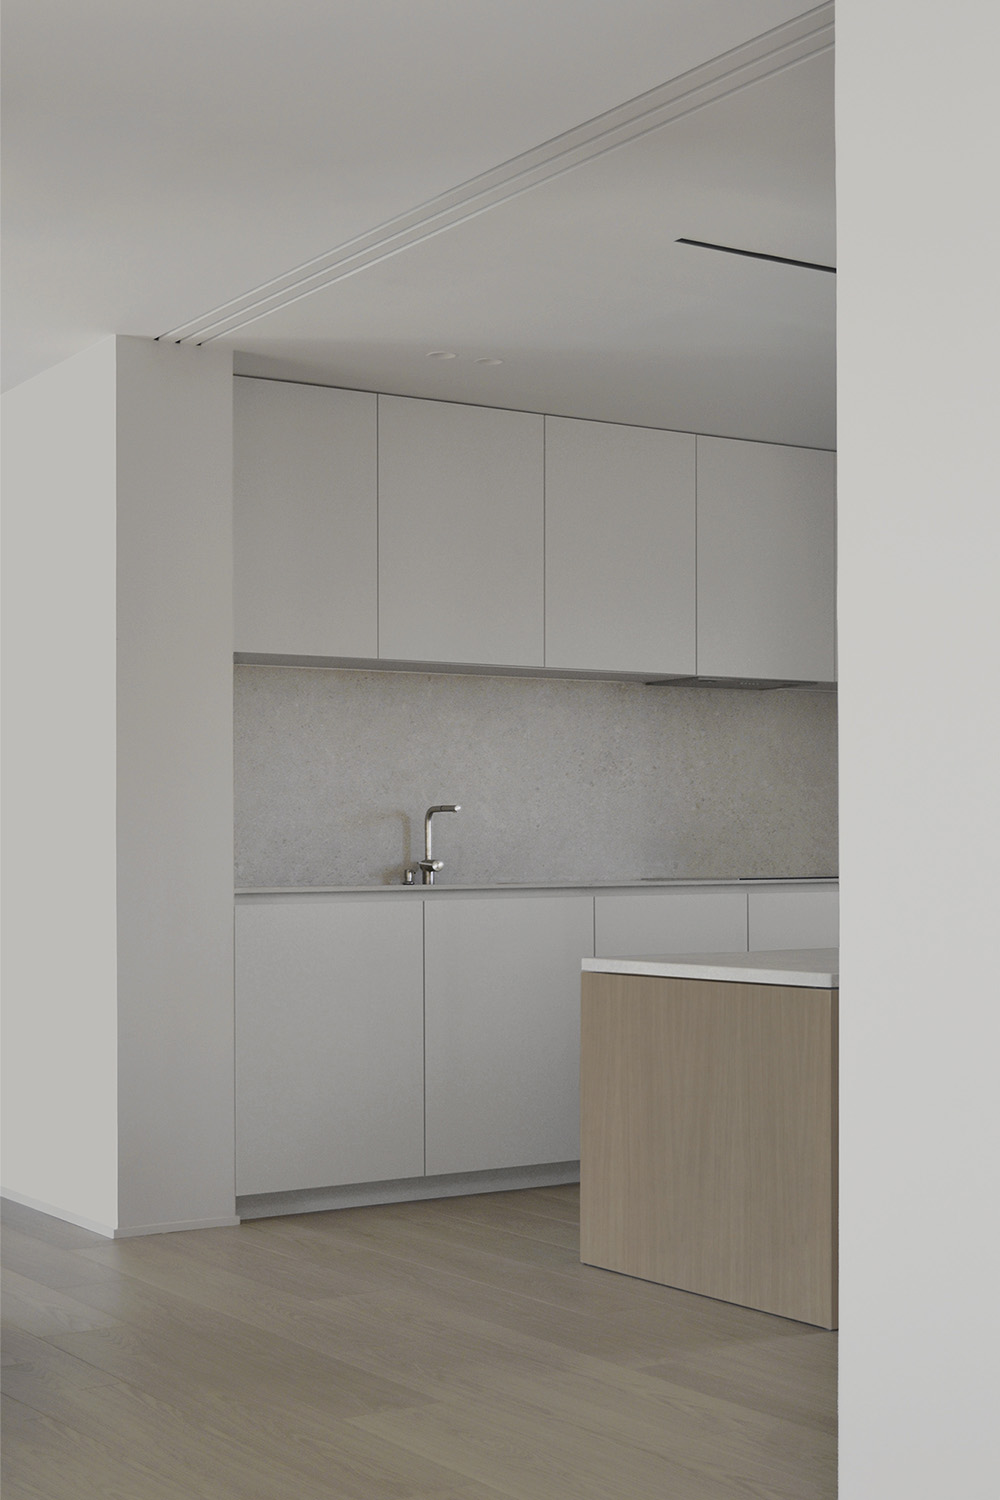 極簡公寓設計案例,公寓設計,極簡主義,國外極簡風格公寓設計,Deza Setien,馬德裏,原木色+白色,公寓設計方案,120㎡